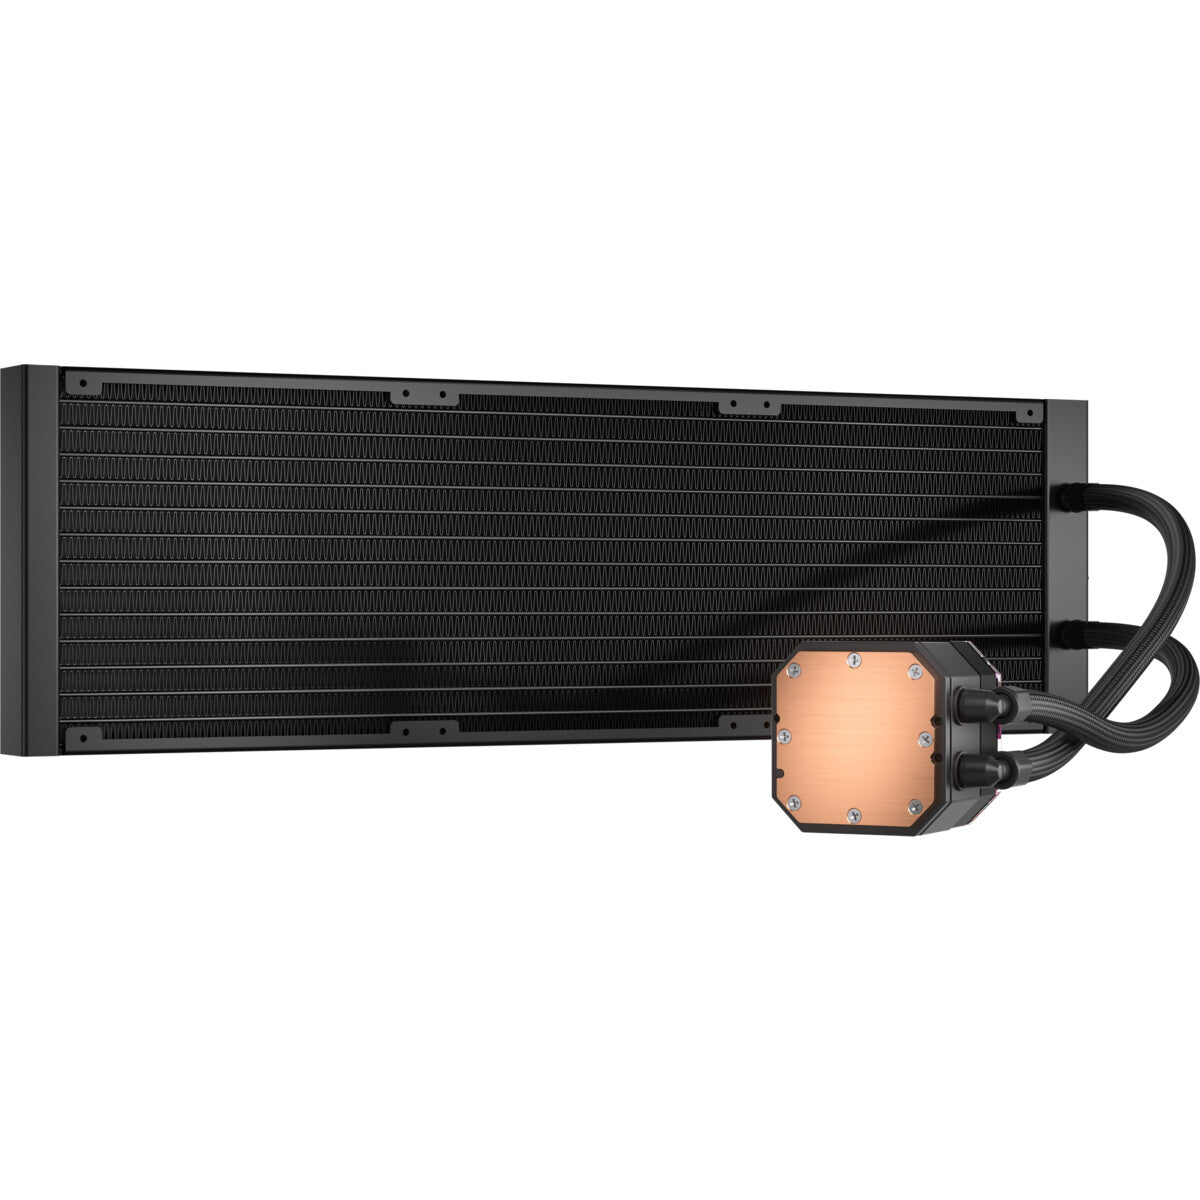 Corsair iCUE H170i Elite - All-in-one Liquid Processor Cooler in Black - 420mm